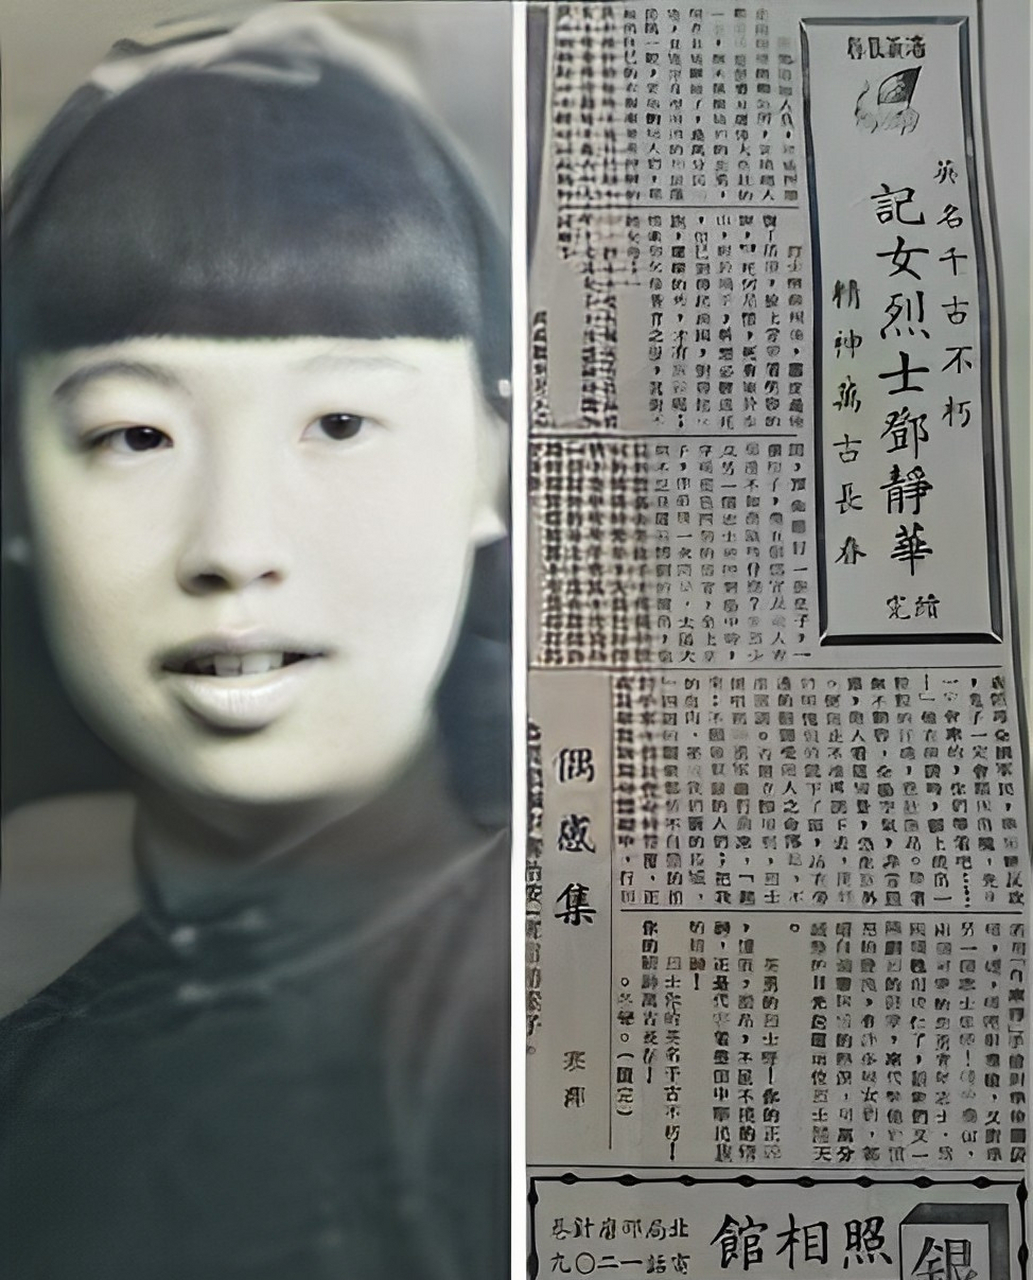 1943年,一位勇敢的抗日女战士邓静华被日军和伪军捕获,她面对审讯和